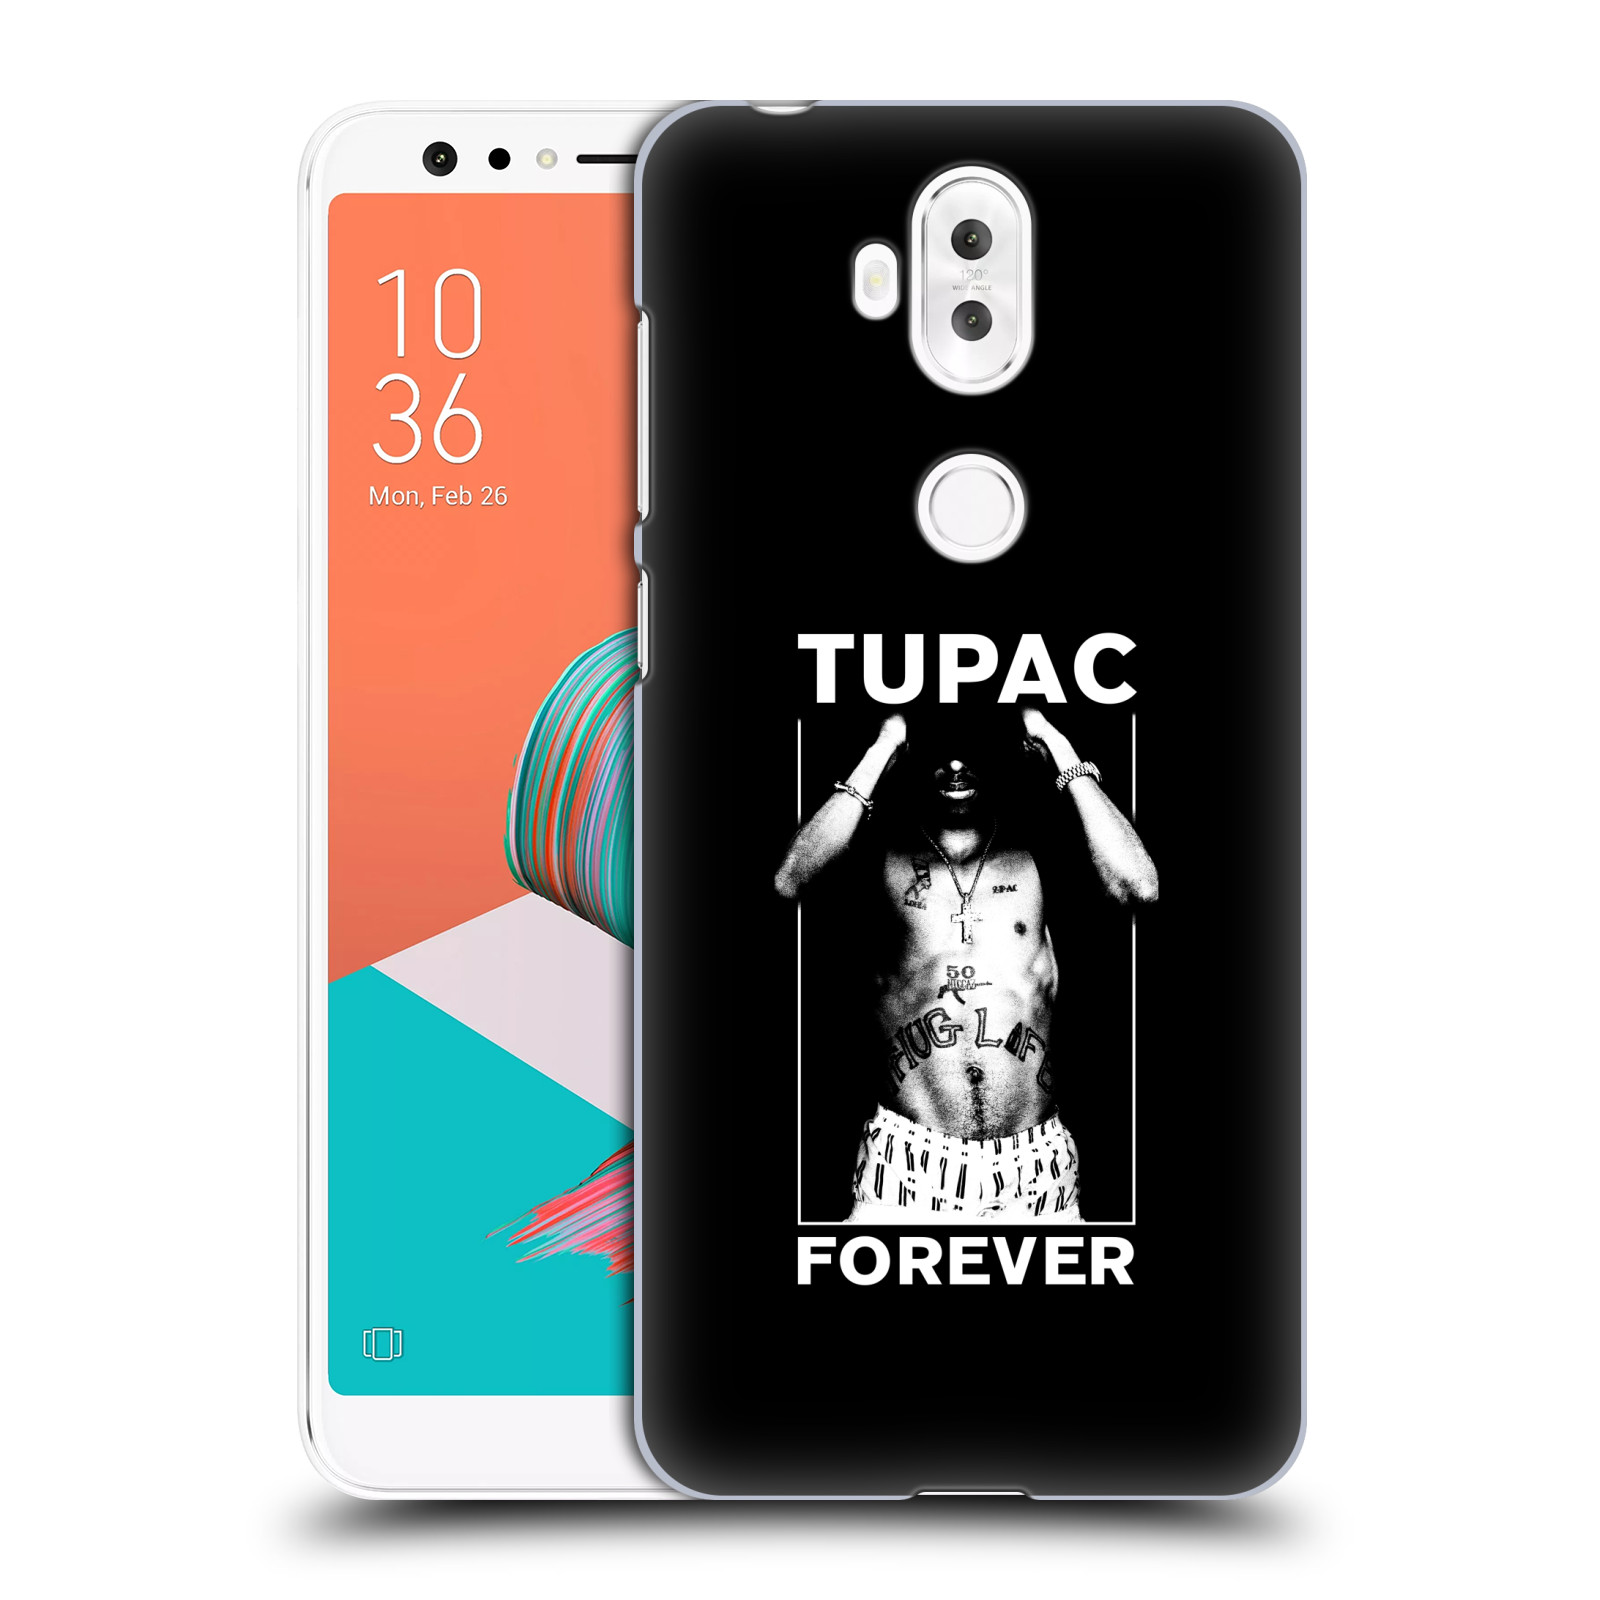 HEAD CASE plastový obal na mobil Asus Zenfone 5 LITE ZC600KL Zpěvák rapper Tupac Shakur 2Pac bílý popisek FOREVER